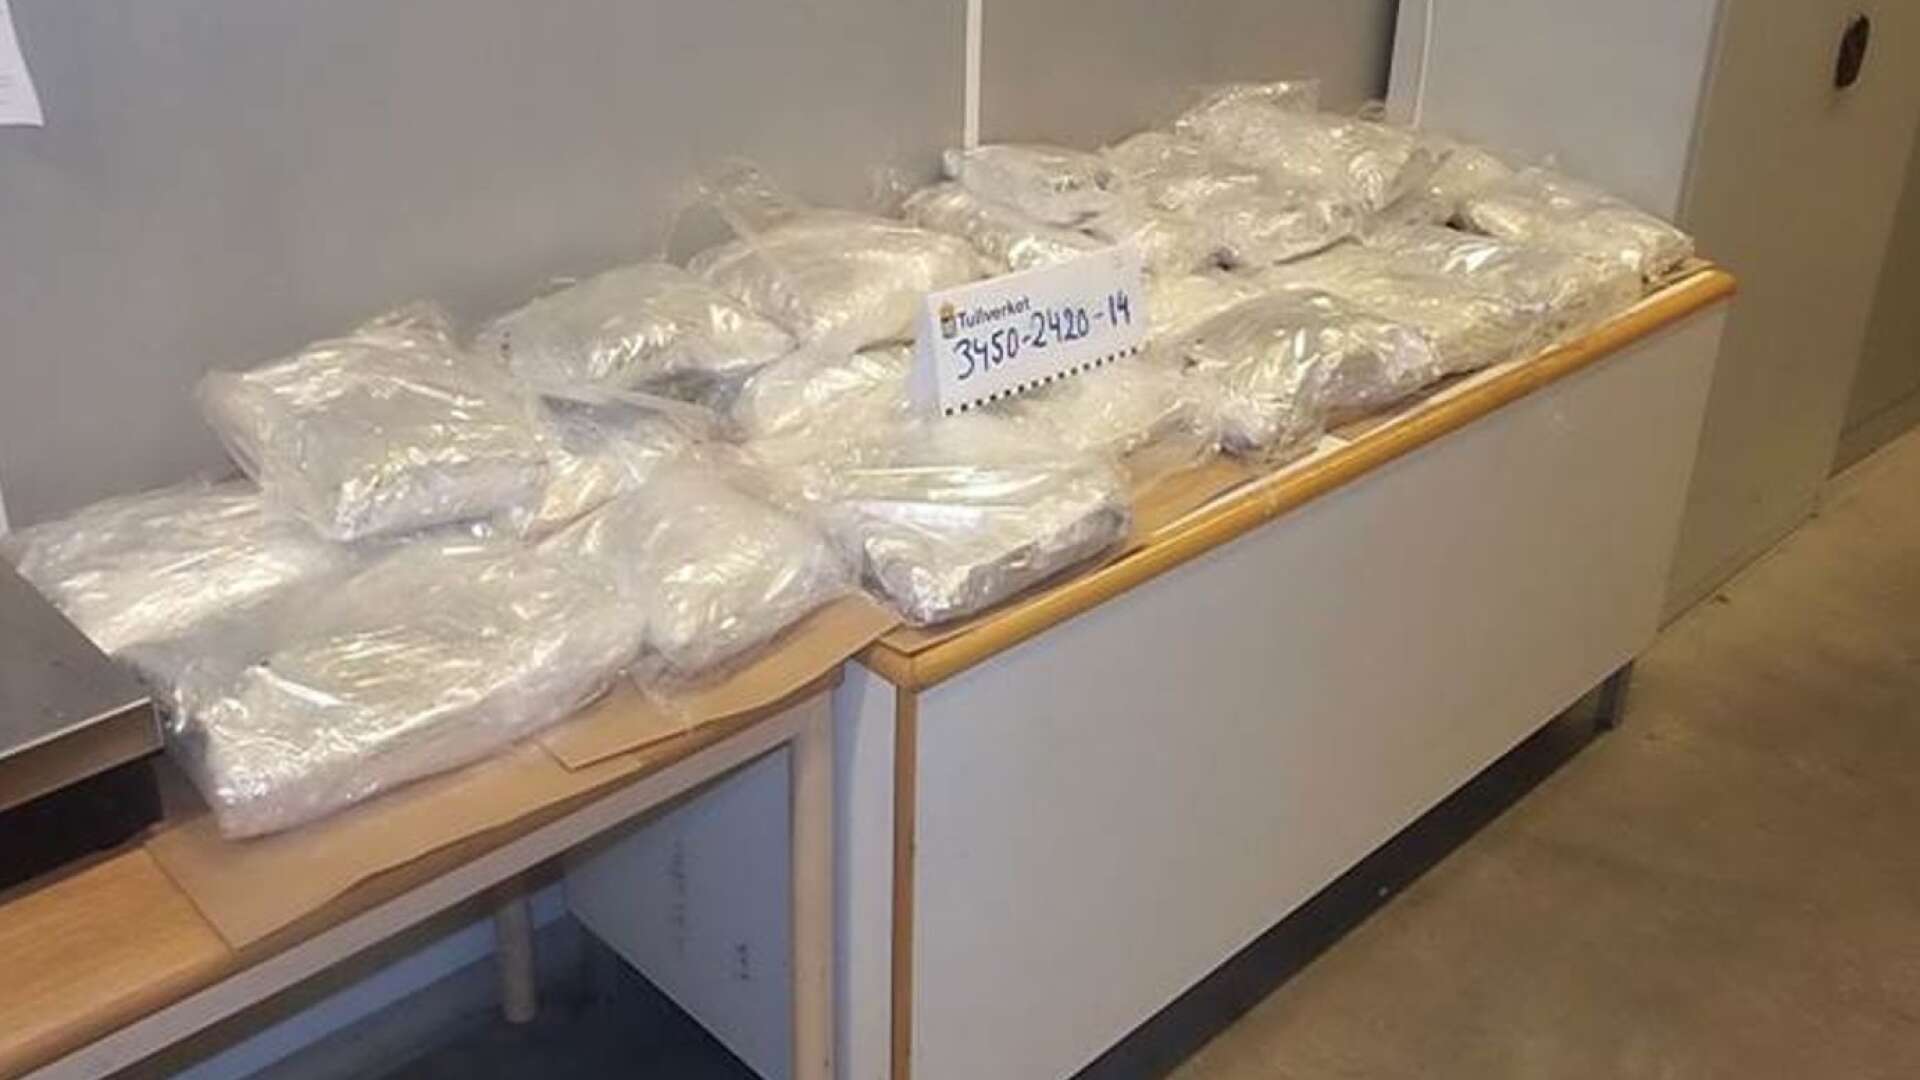 En man åtalas för bland annat narkotikabrott efter att ha innehaft amfetamin i Färgelanda kommun.